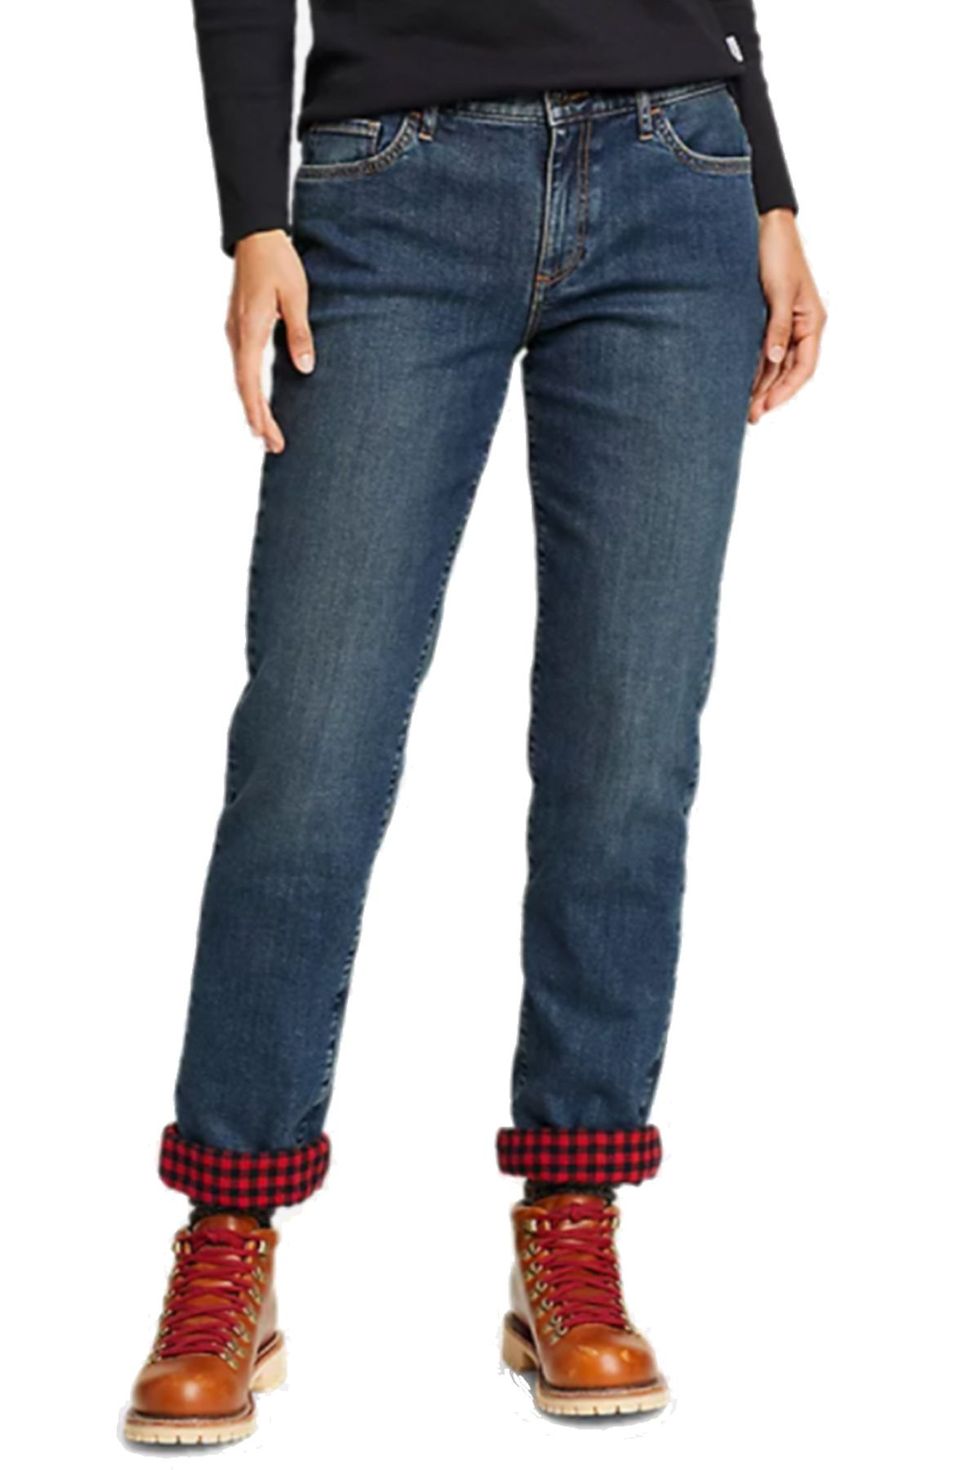 Fleece Lined Jeans for Women - The Best Fleece Lined Jeans